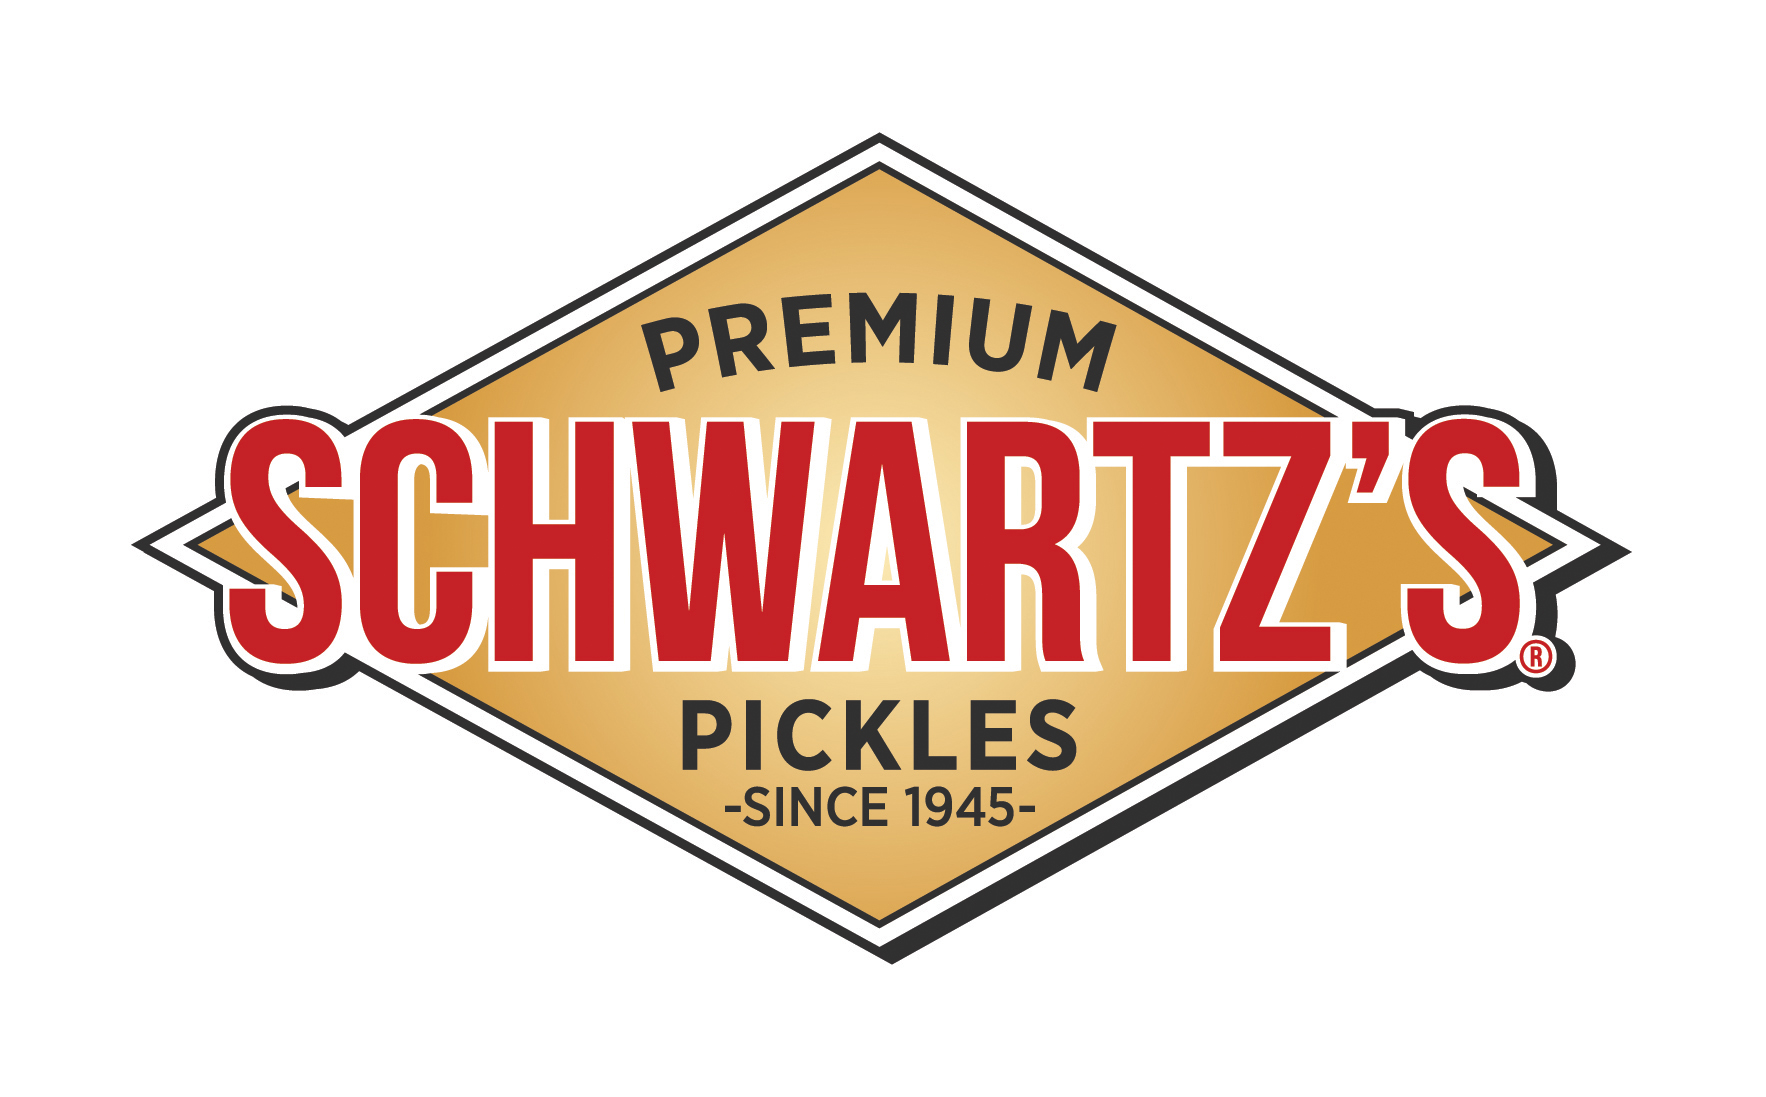 Schwartz's Pickles